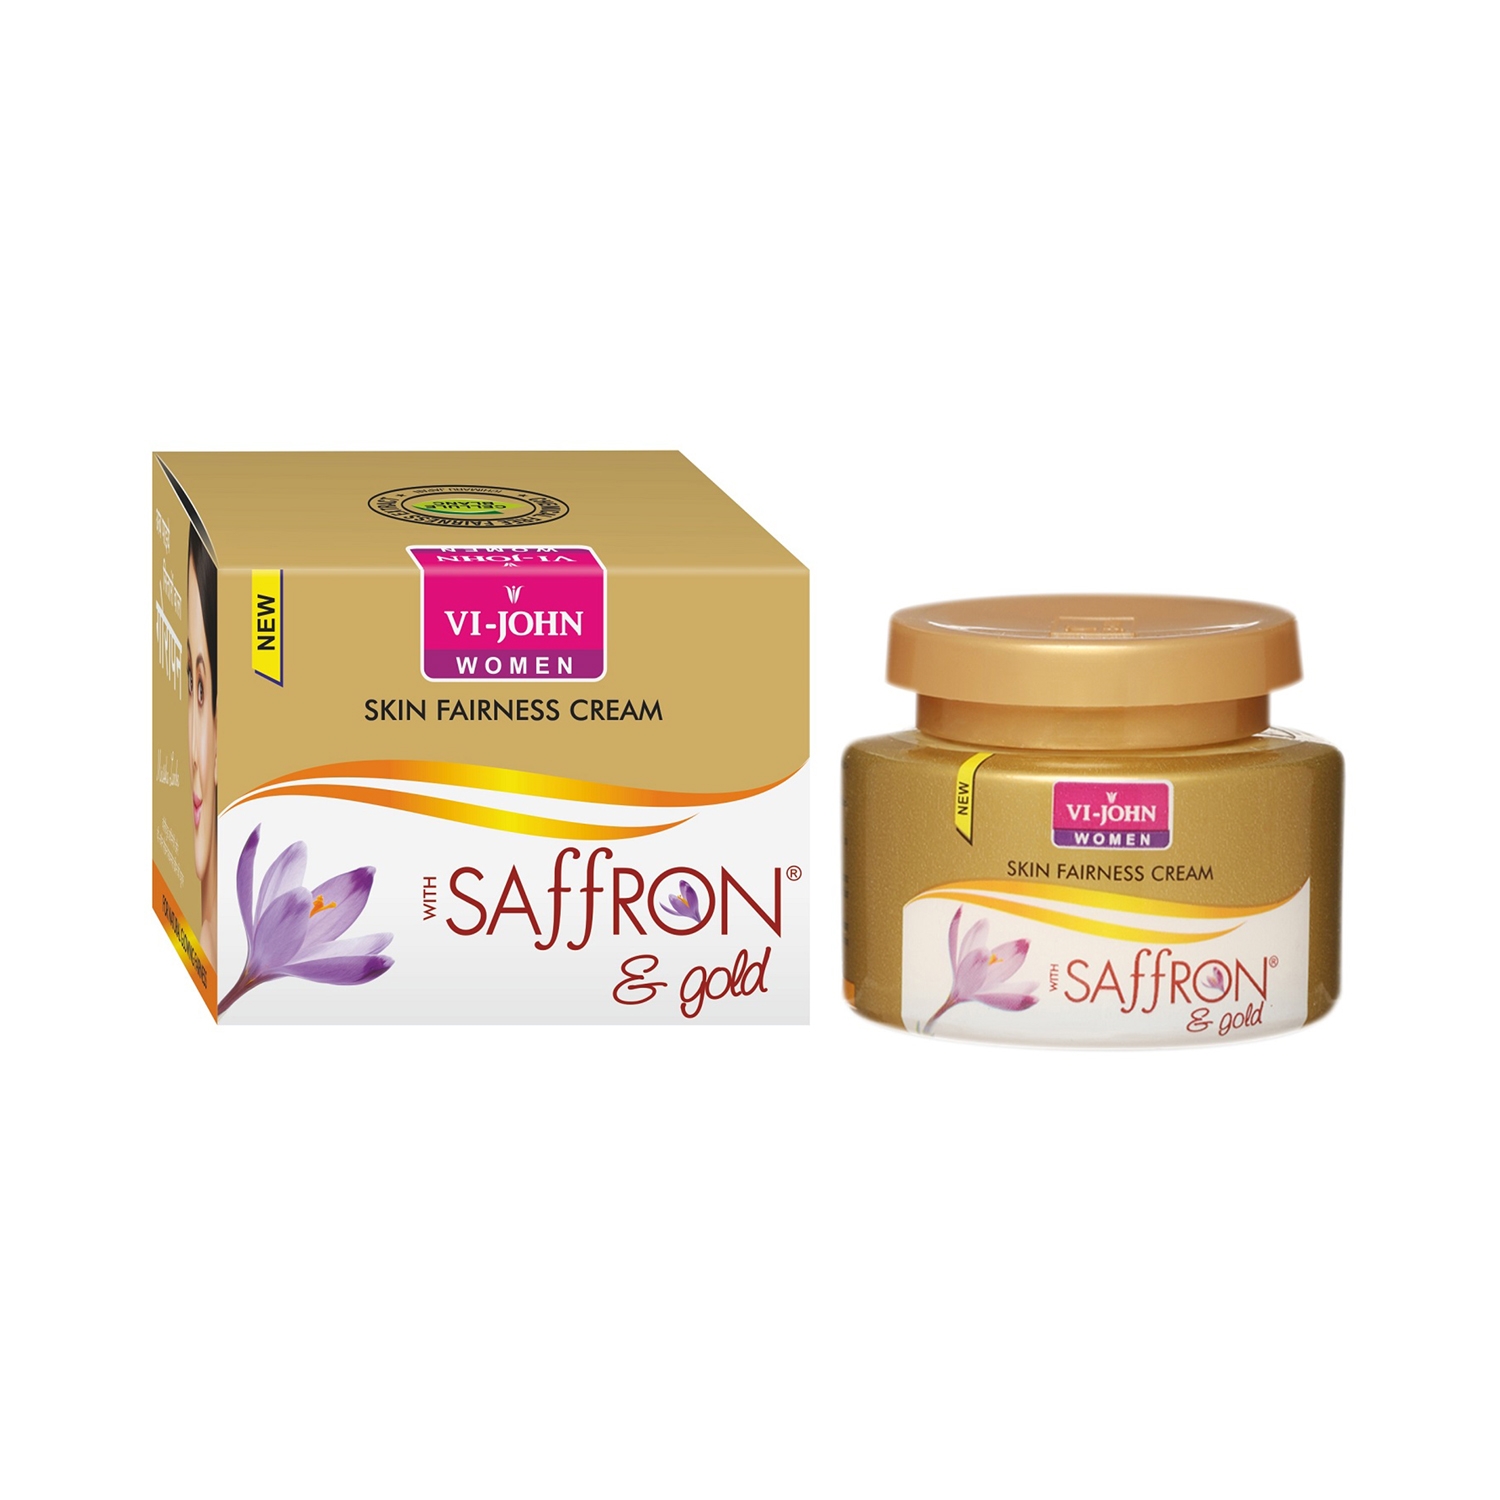 VI-JOHN | VI-JOHN Gold & Saffron Fairness Cream With Vitamin E (50g)